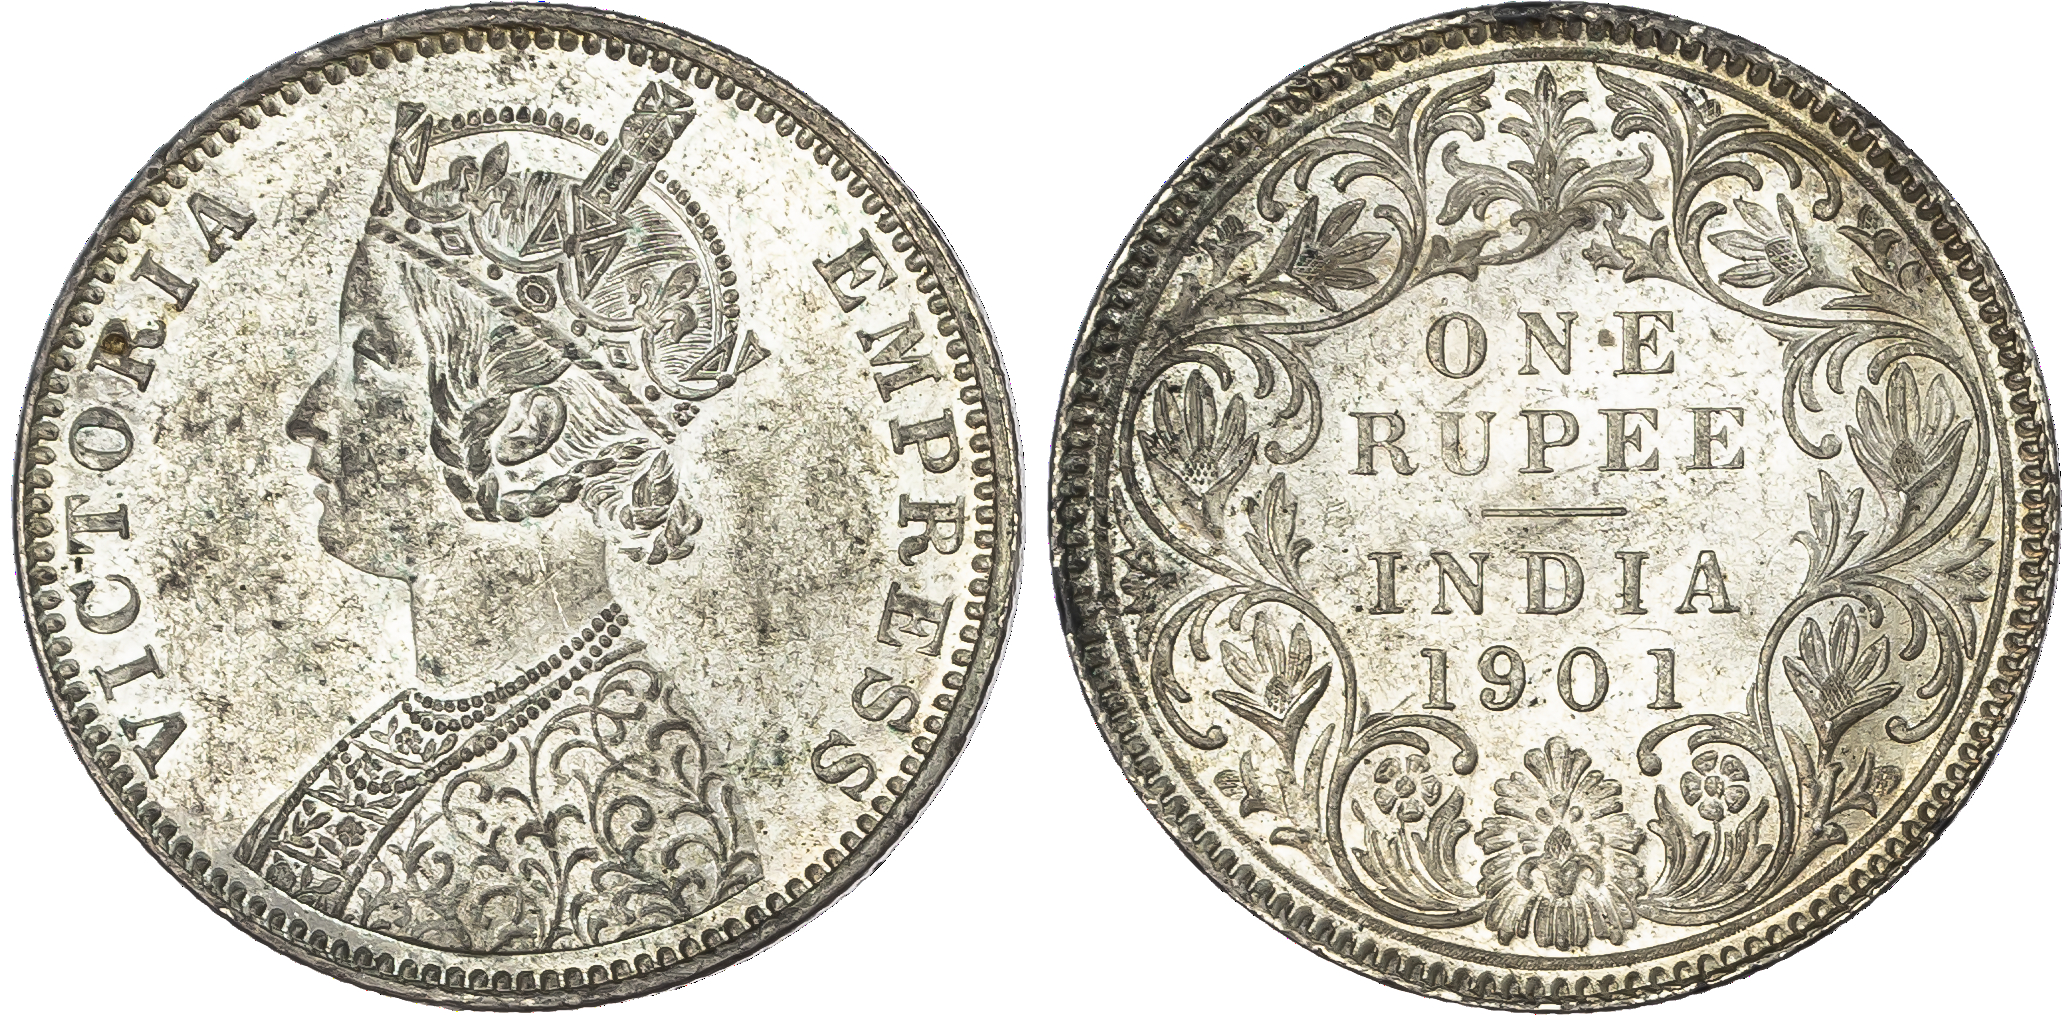 India, EIC, Victoria (1837-1901), silver Rupee, 1901, Bombay